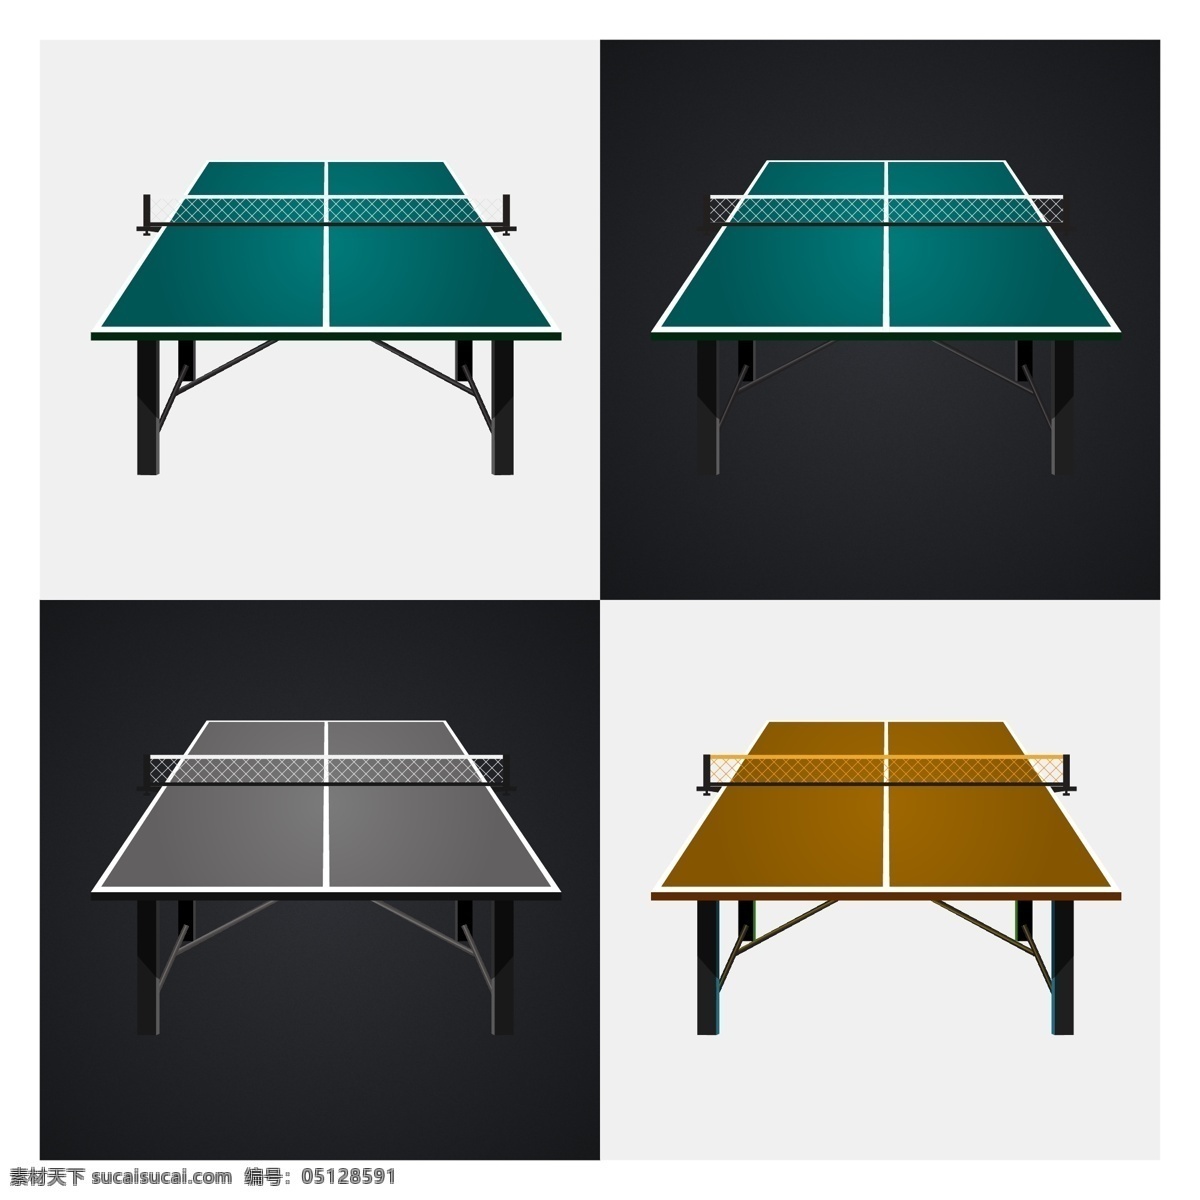 乒乓球台 矢量图 乒乓球桌 乒乓台 矢量素材 其他矢量 矢量